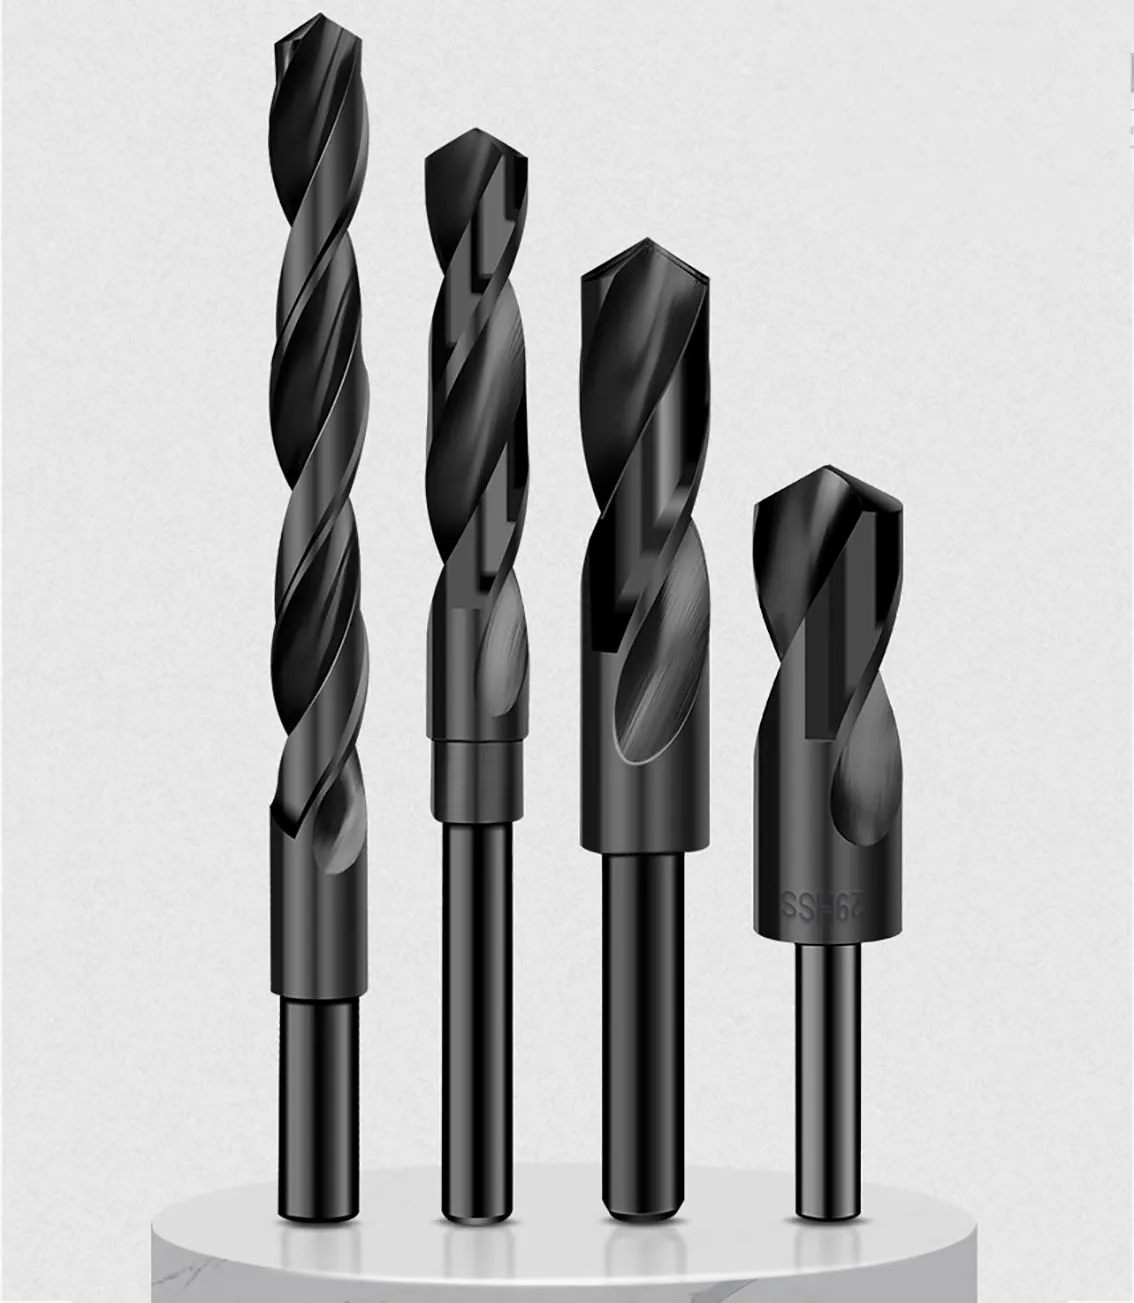 

1 шт. черное спиральное сверло 10 мм/12,7 мм (1/2 дюйма) хвостовик сверла из быстрорежущей стали инструменты для сверления металла деревообработки 12 мм-35 мм